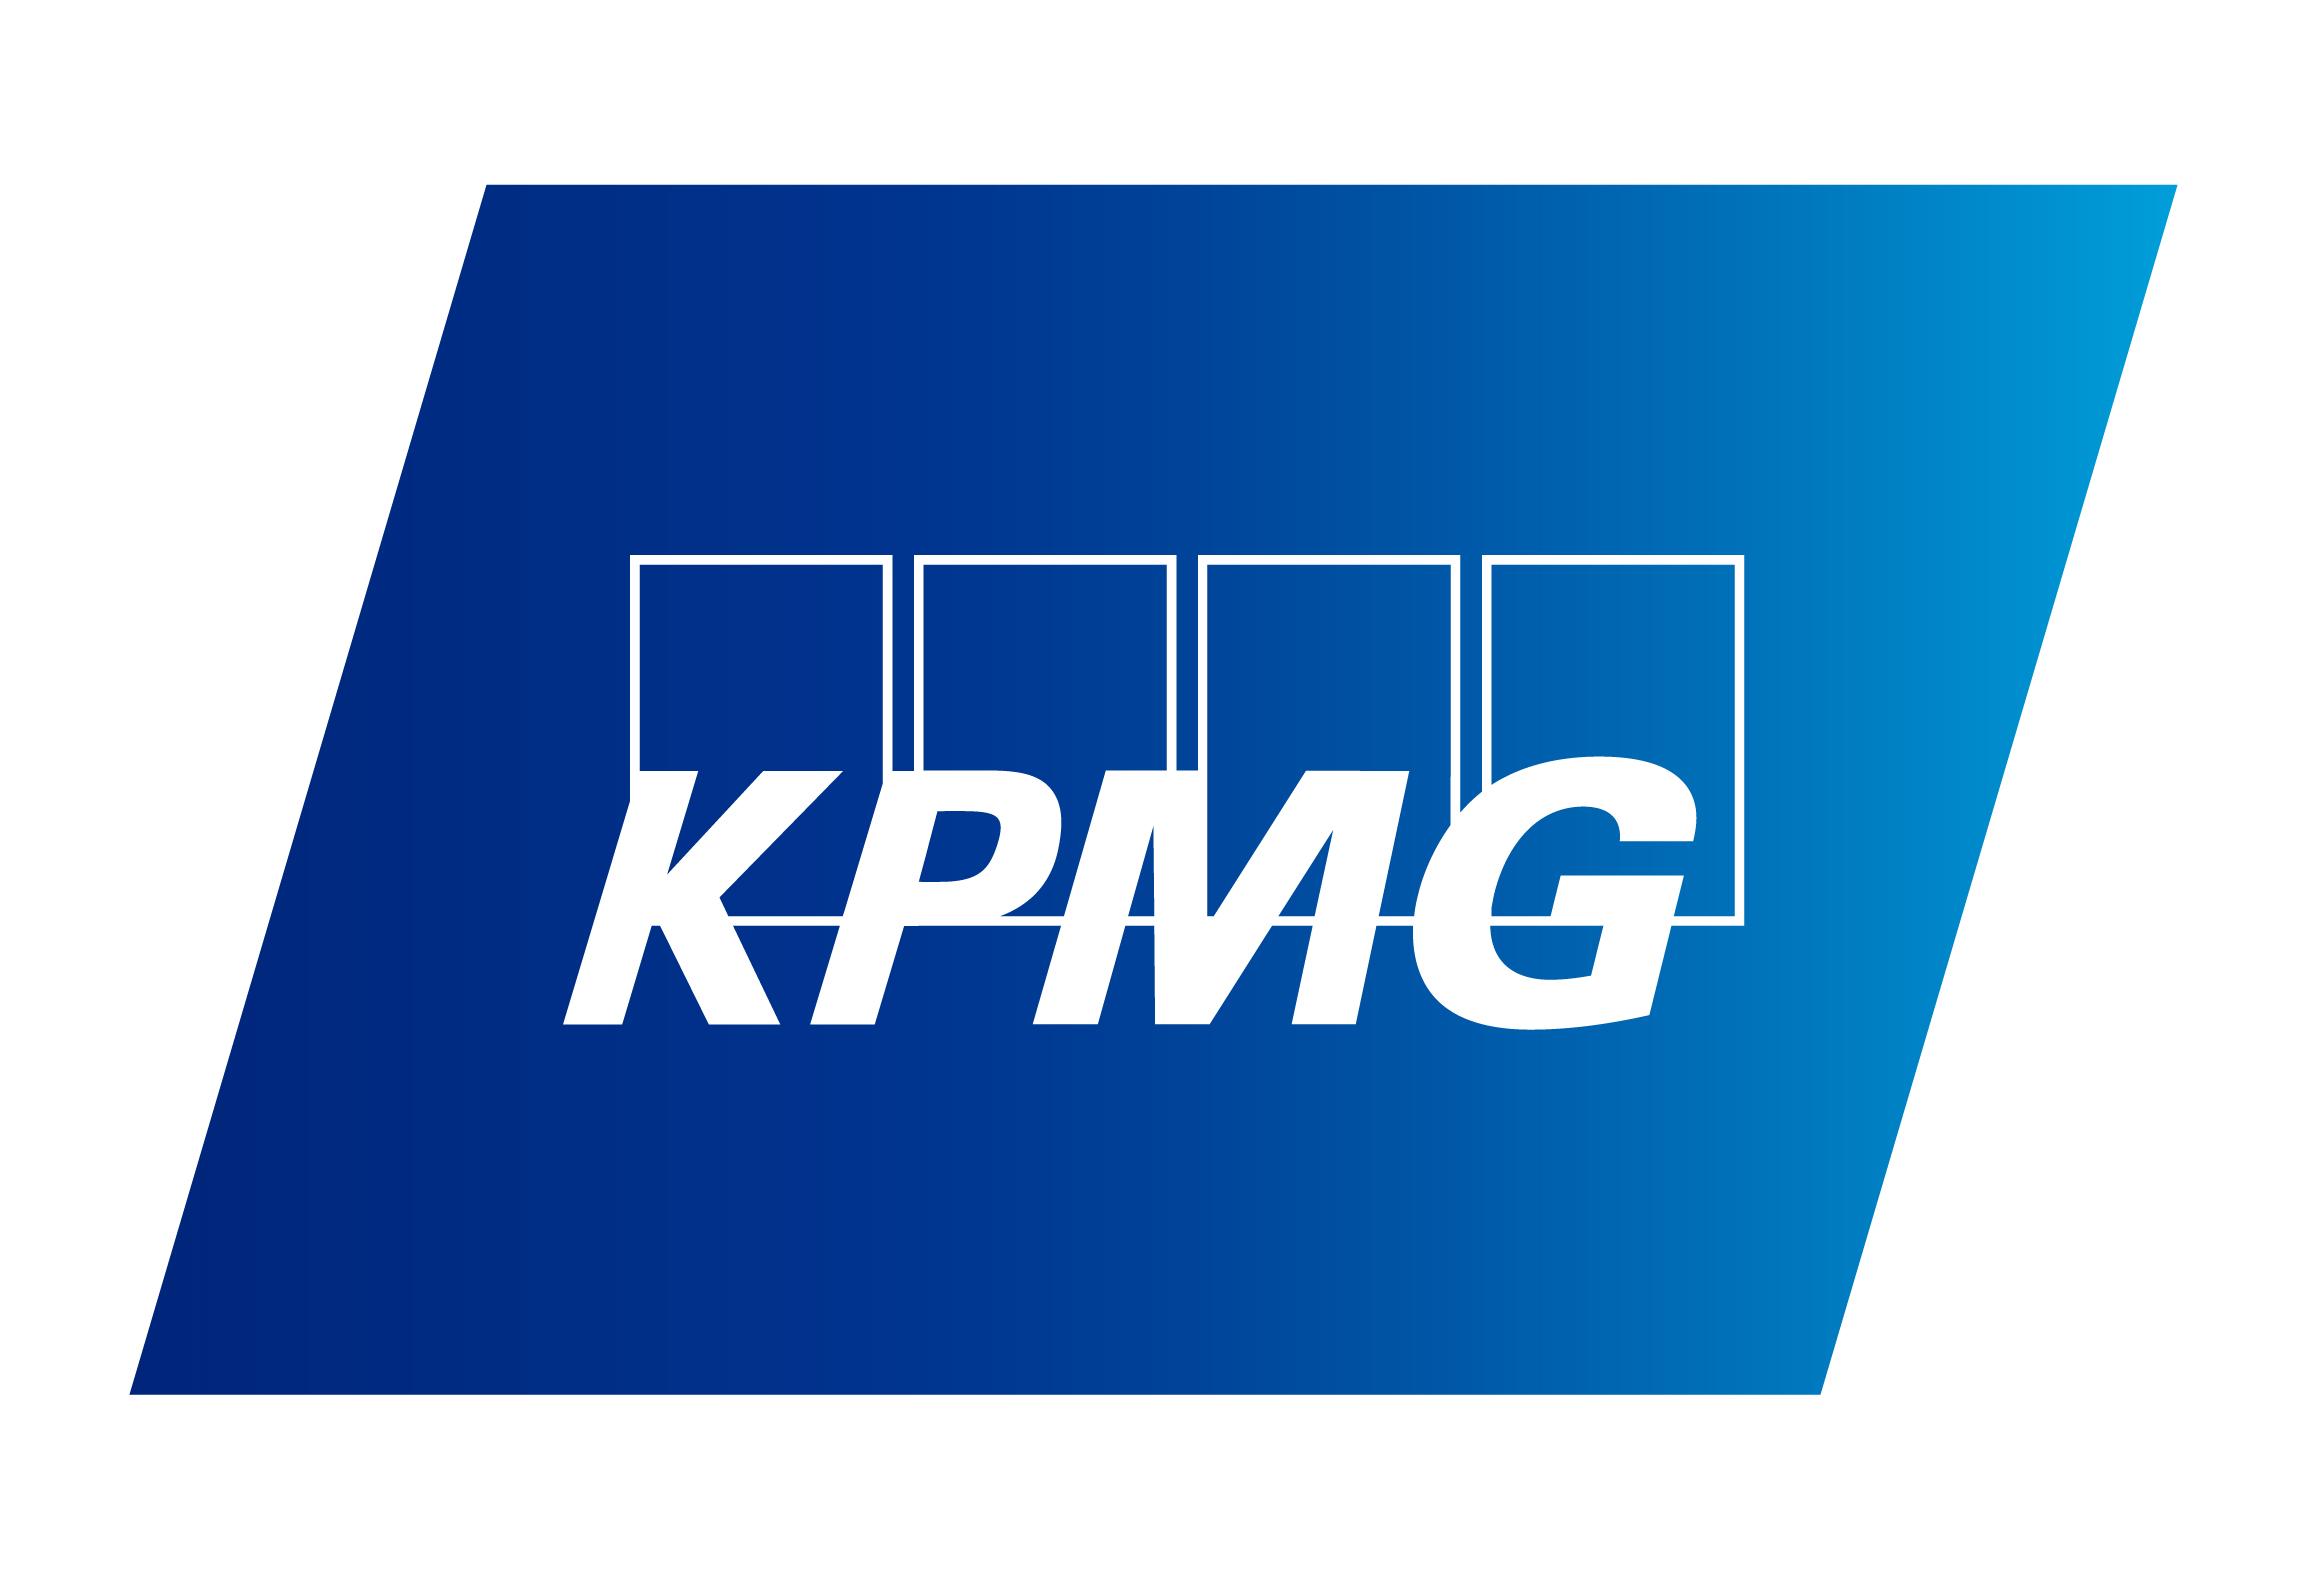 40+ KPMG employees